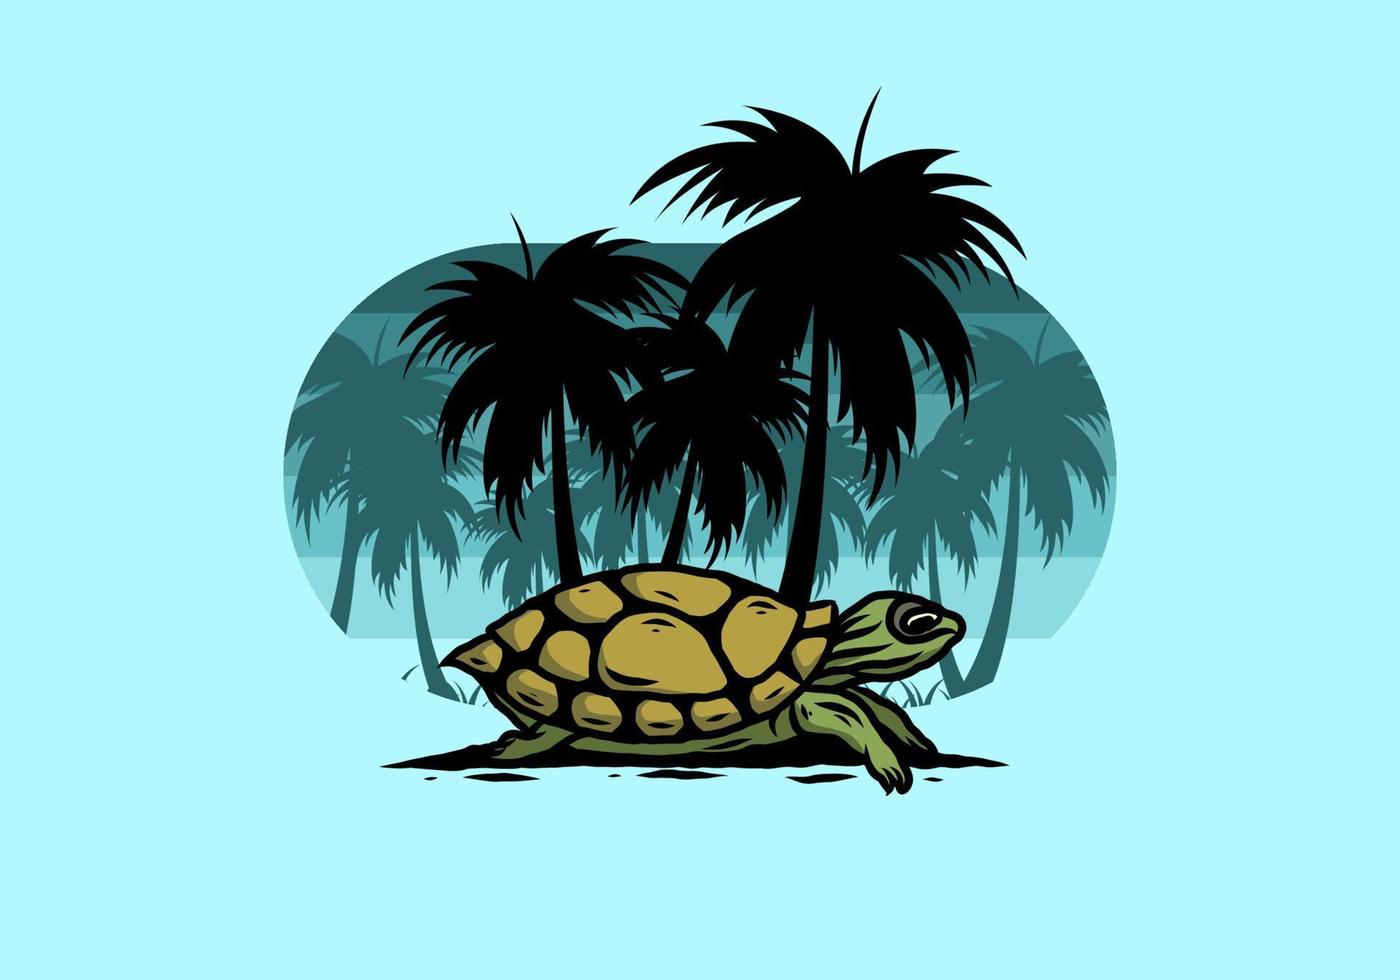 meeresschildkröte unter der kokosnussbaumillustration vektor